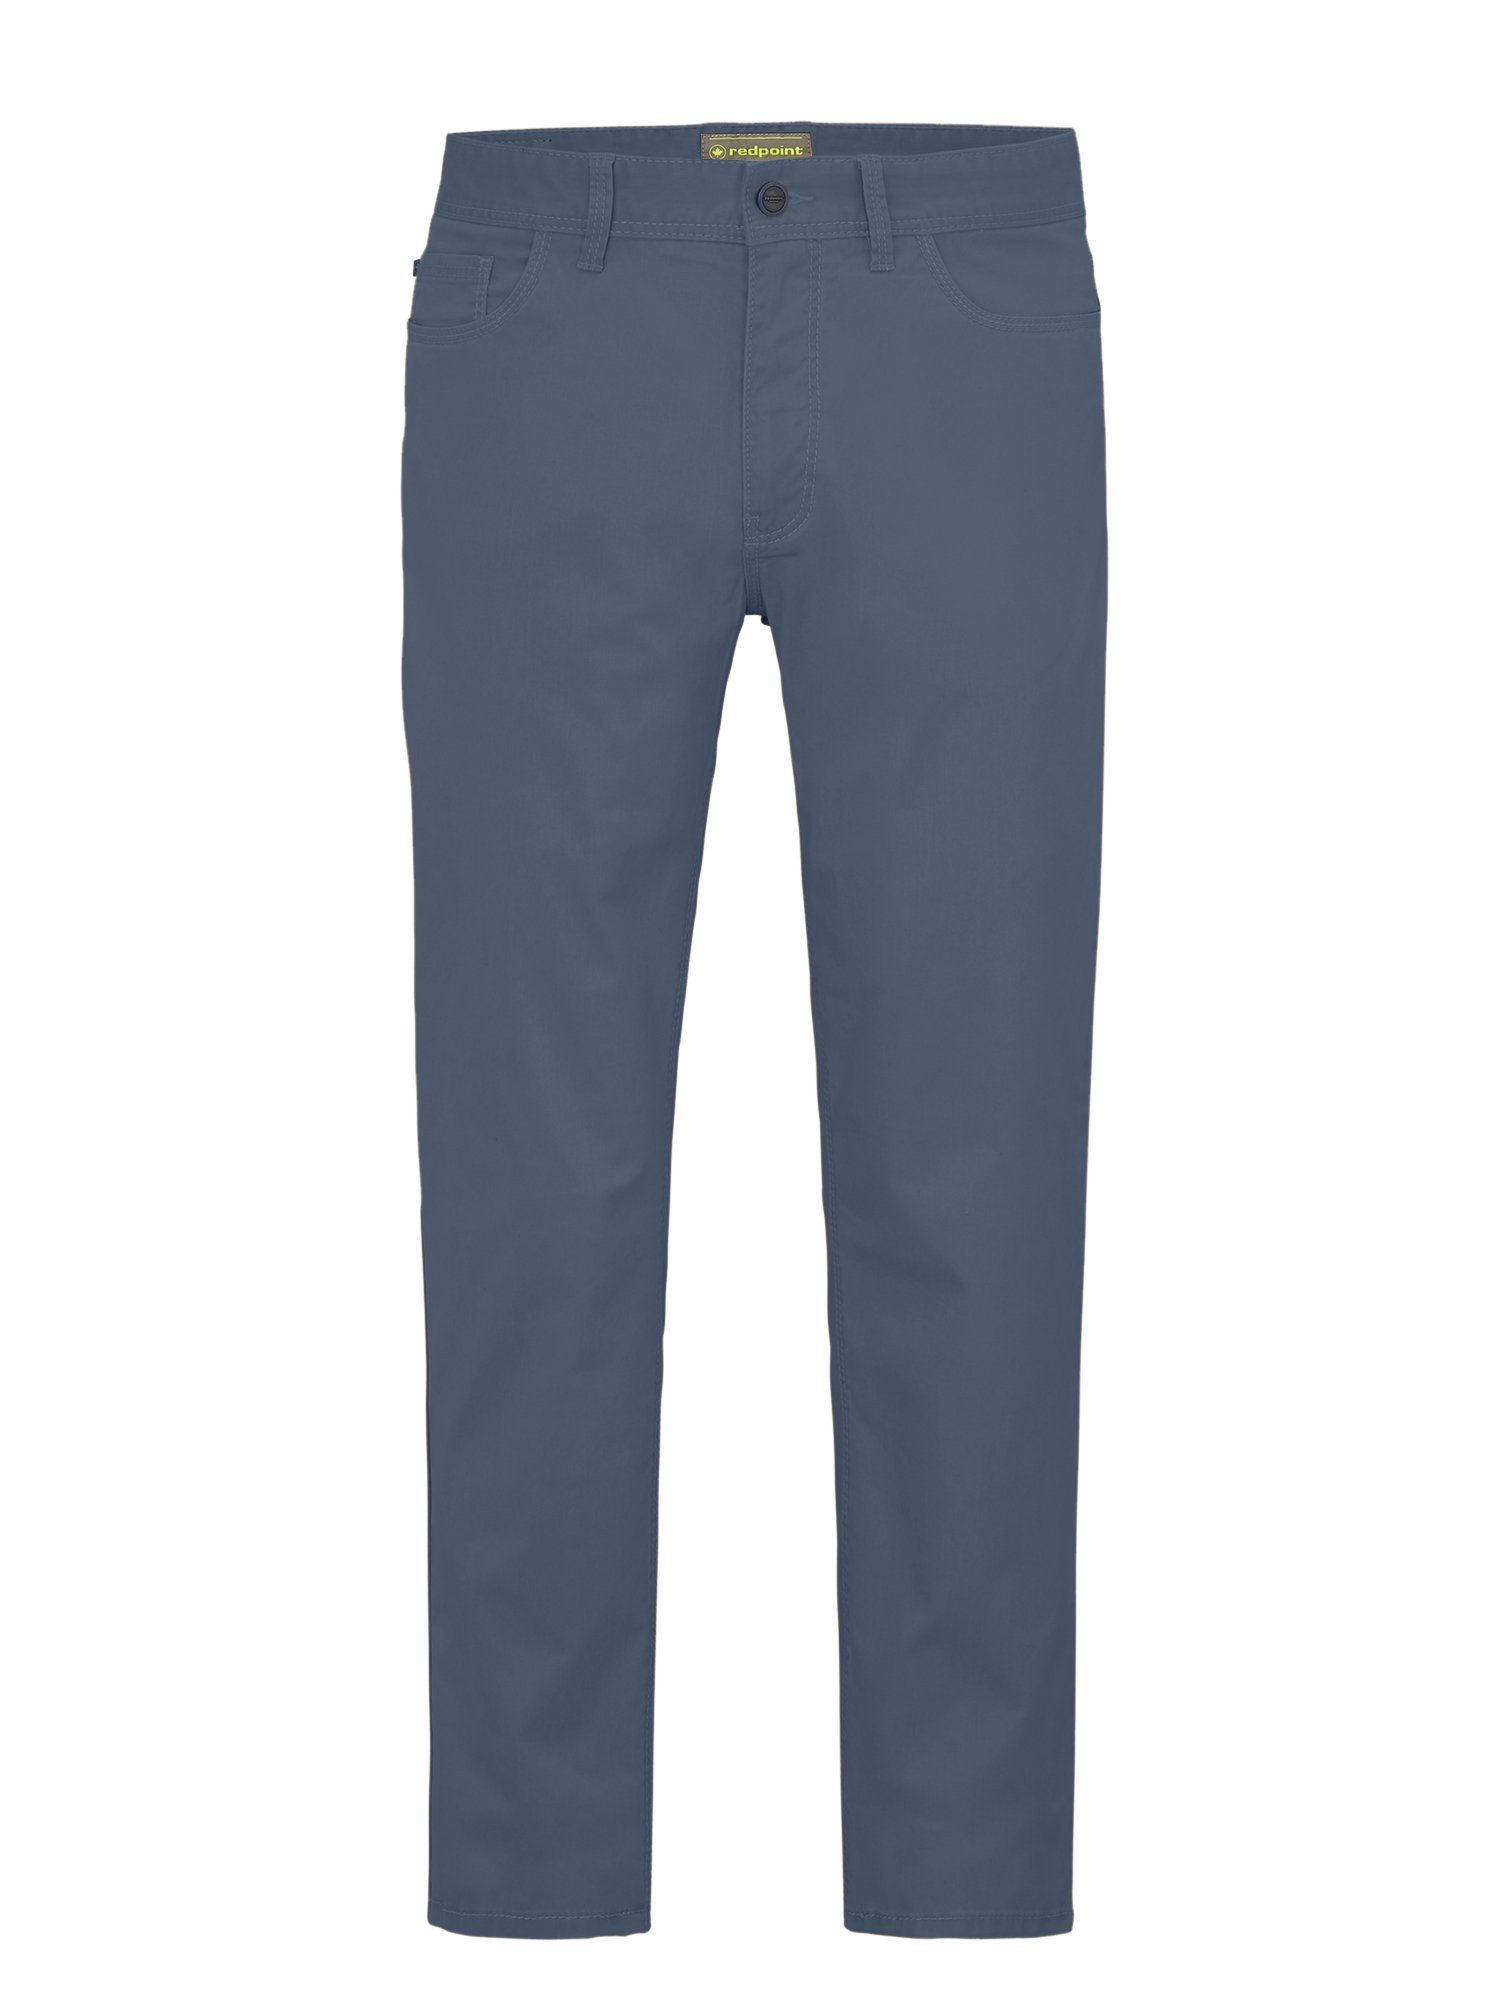 Baumwolle 5 Pocket Stoffhose MILTON nachaltiger super Redpoint stretch blue aus